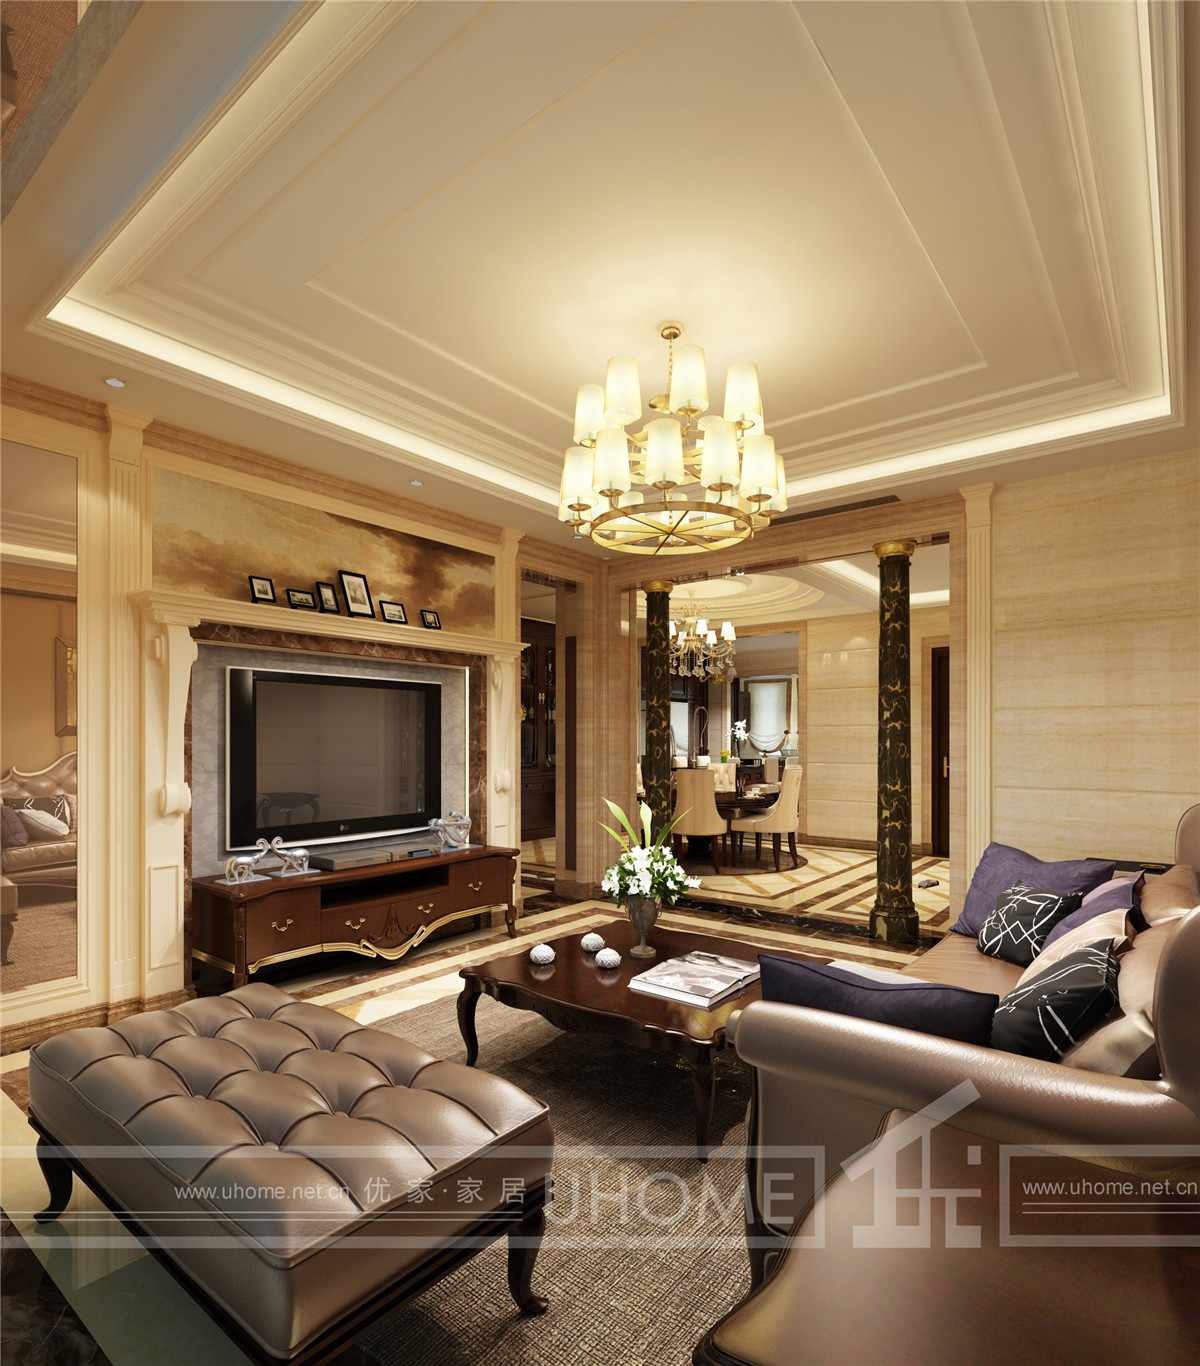 赵新艳作品 客厅图片来自上海奥邦装饰在西郊半岛别墅现代风格设计的